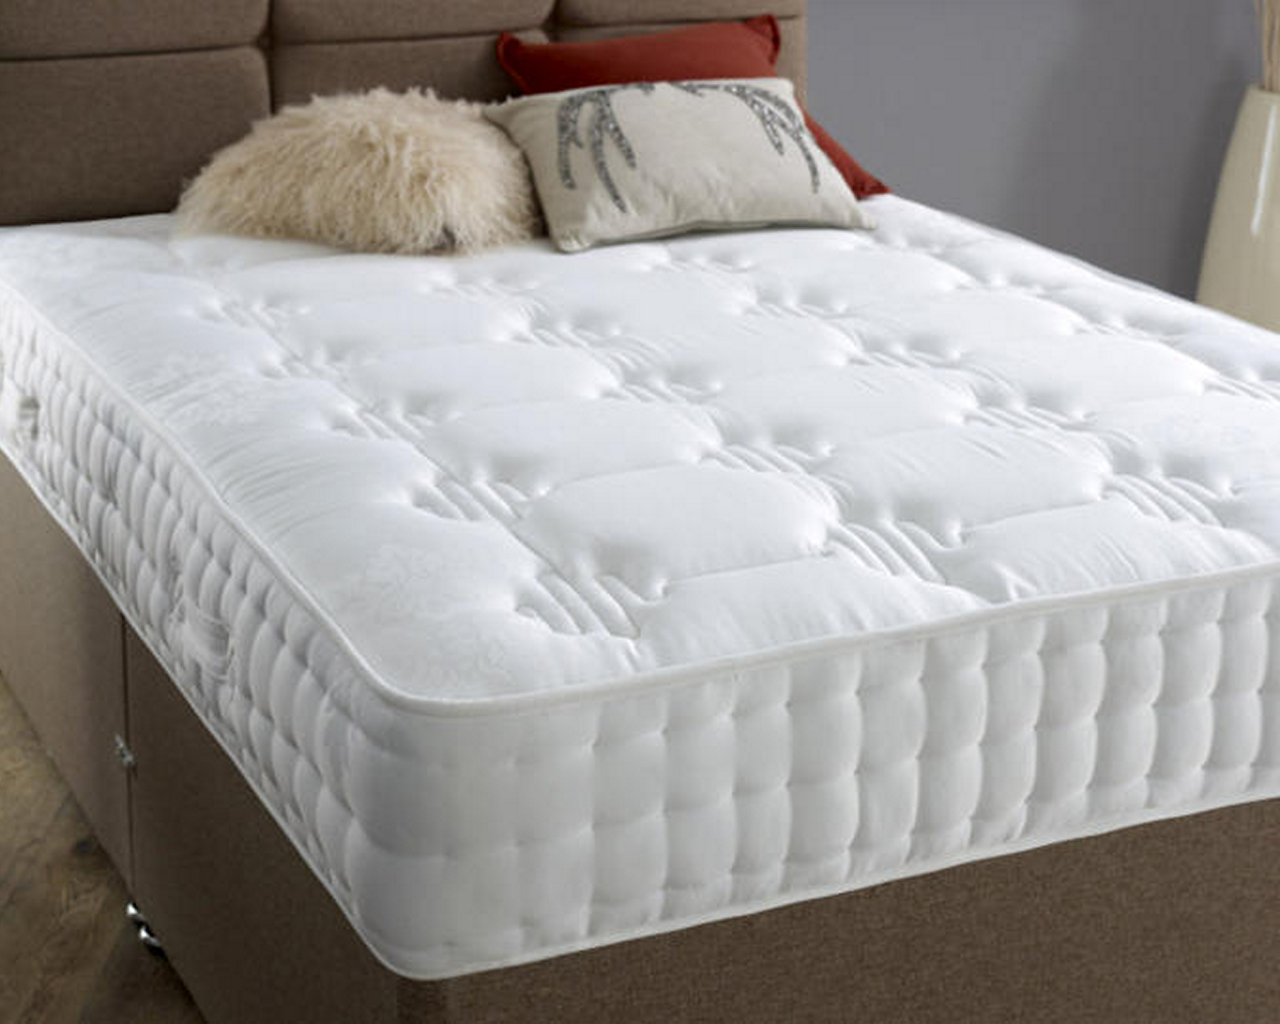 hilton mattress pad review